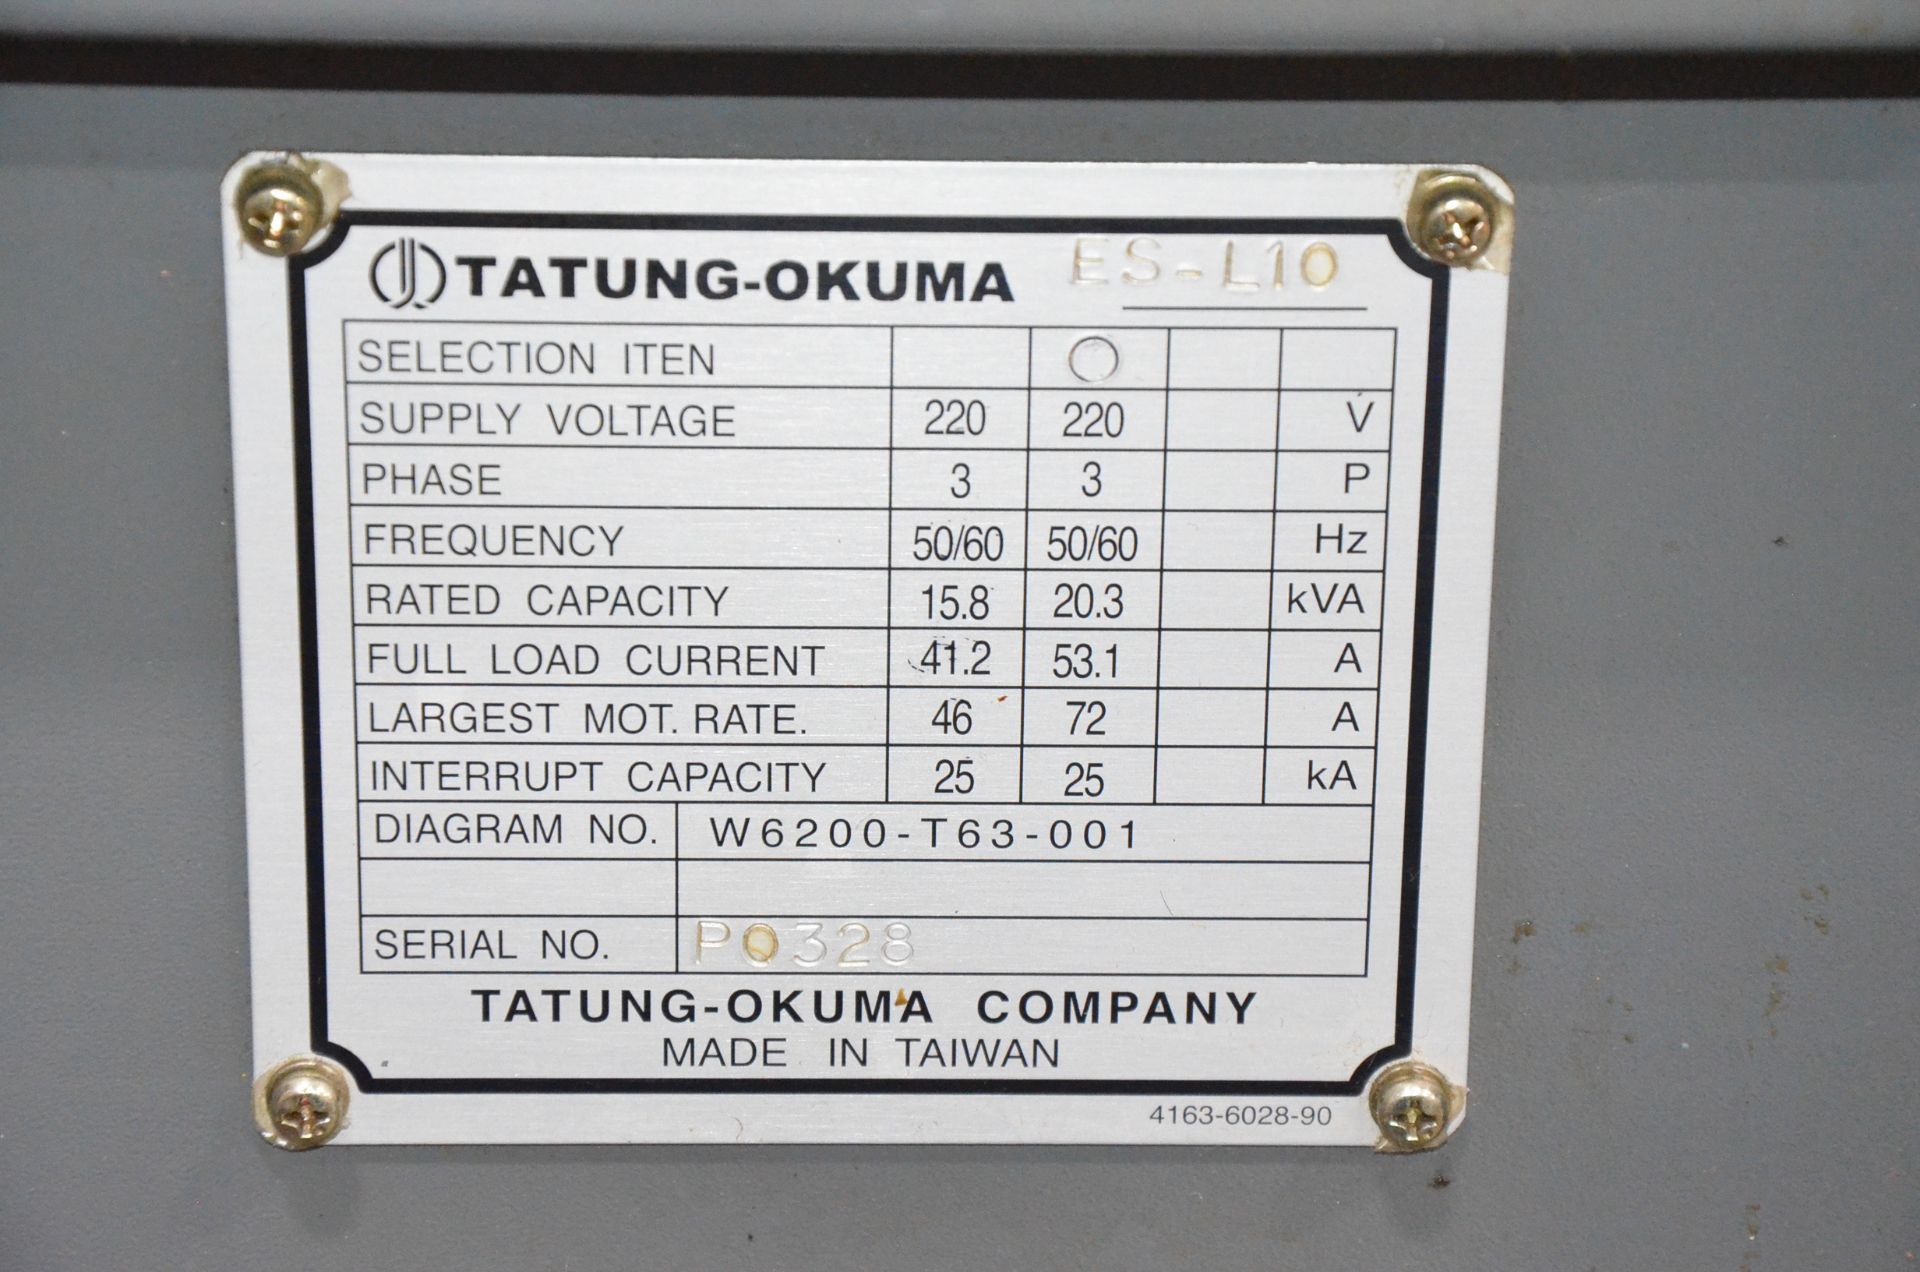 OKUMA (2006) HERITAGE ES-L10II CNC TURNING CENTER WITH OKUMA OSP-U10L CNC CONTROL, 20.47" SWING, - Image 13 of 13